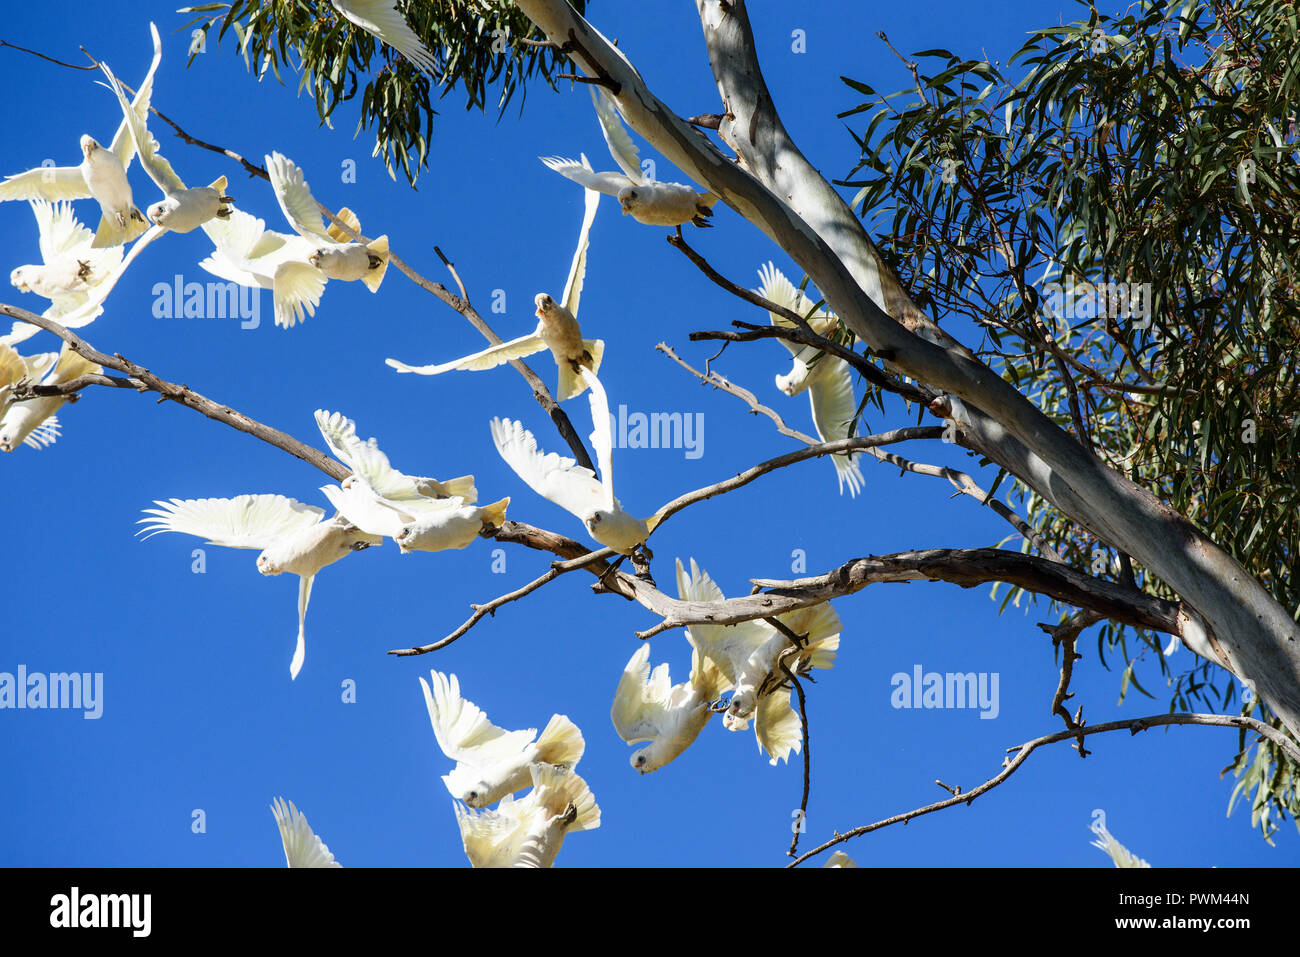 Troupeau d'oiseaux blancs, corellas, décollant de gum tree avec fond de ciel bleu, l'Australie du Sud, Australie Banque D'Images